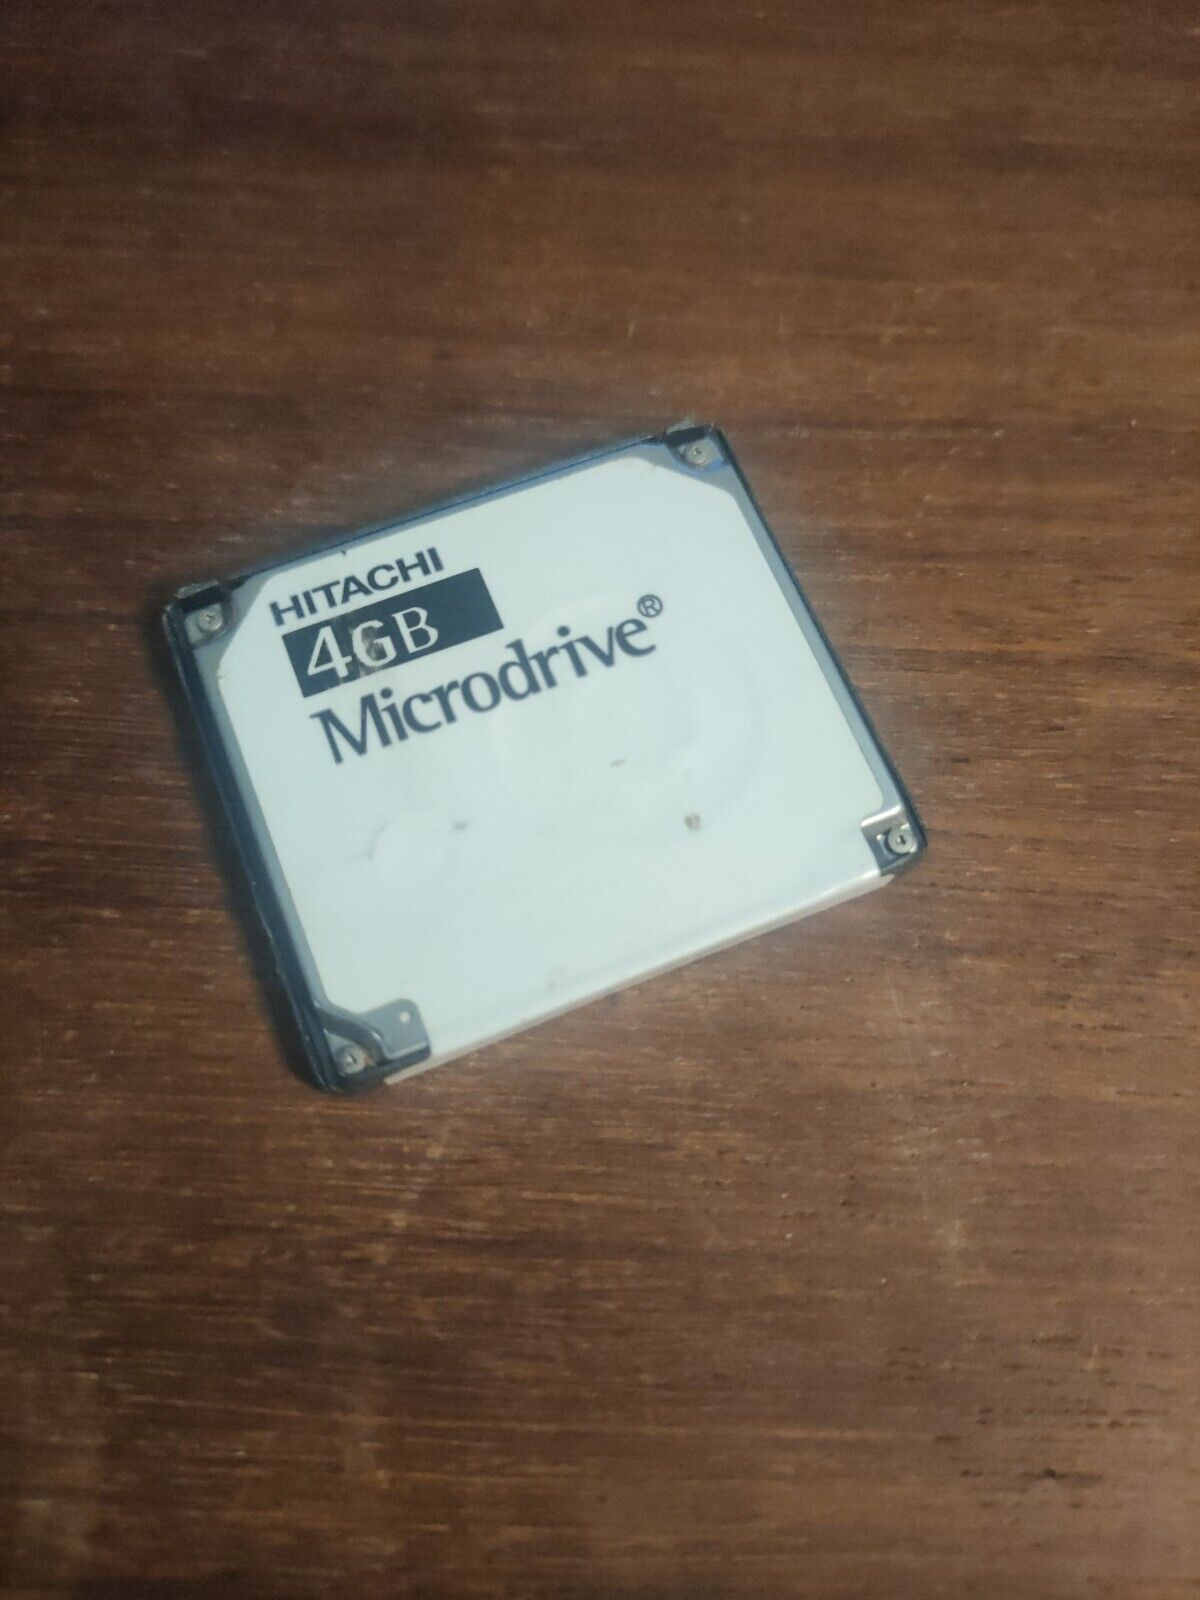 Vintage Microdrive Micro Drive Memory Hitachi 4GB HMS360404D5CF00 13G1766